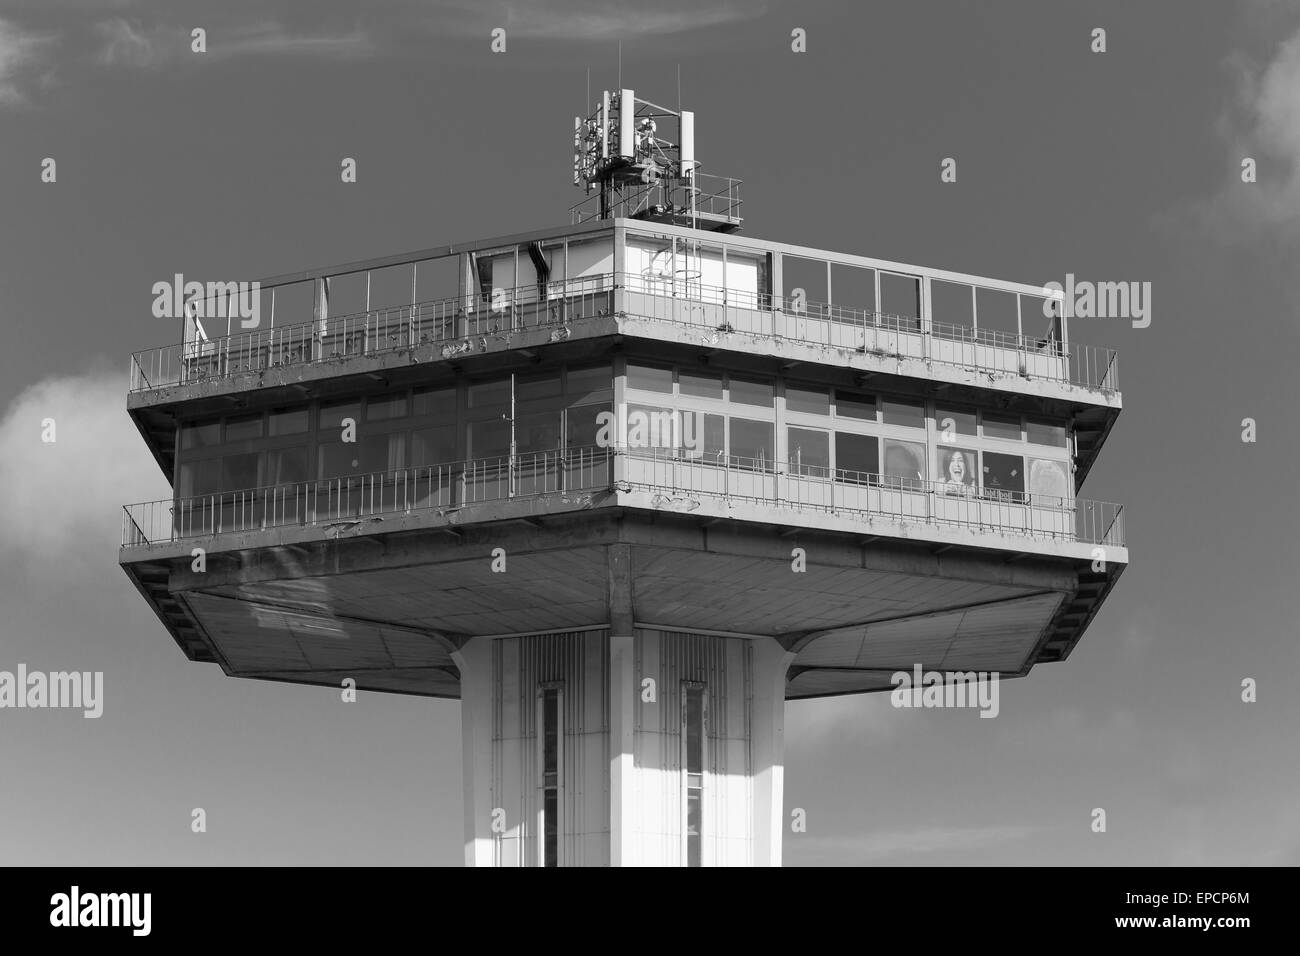 Der Pennine Turm, Teil der Lancaster Services eröffnet 1965, entworfen von den Architekten T.P. Bennett und Sohn. Monochromes Bild. Stockfoto